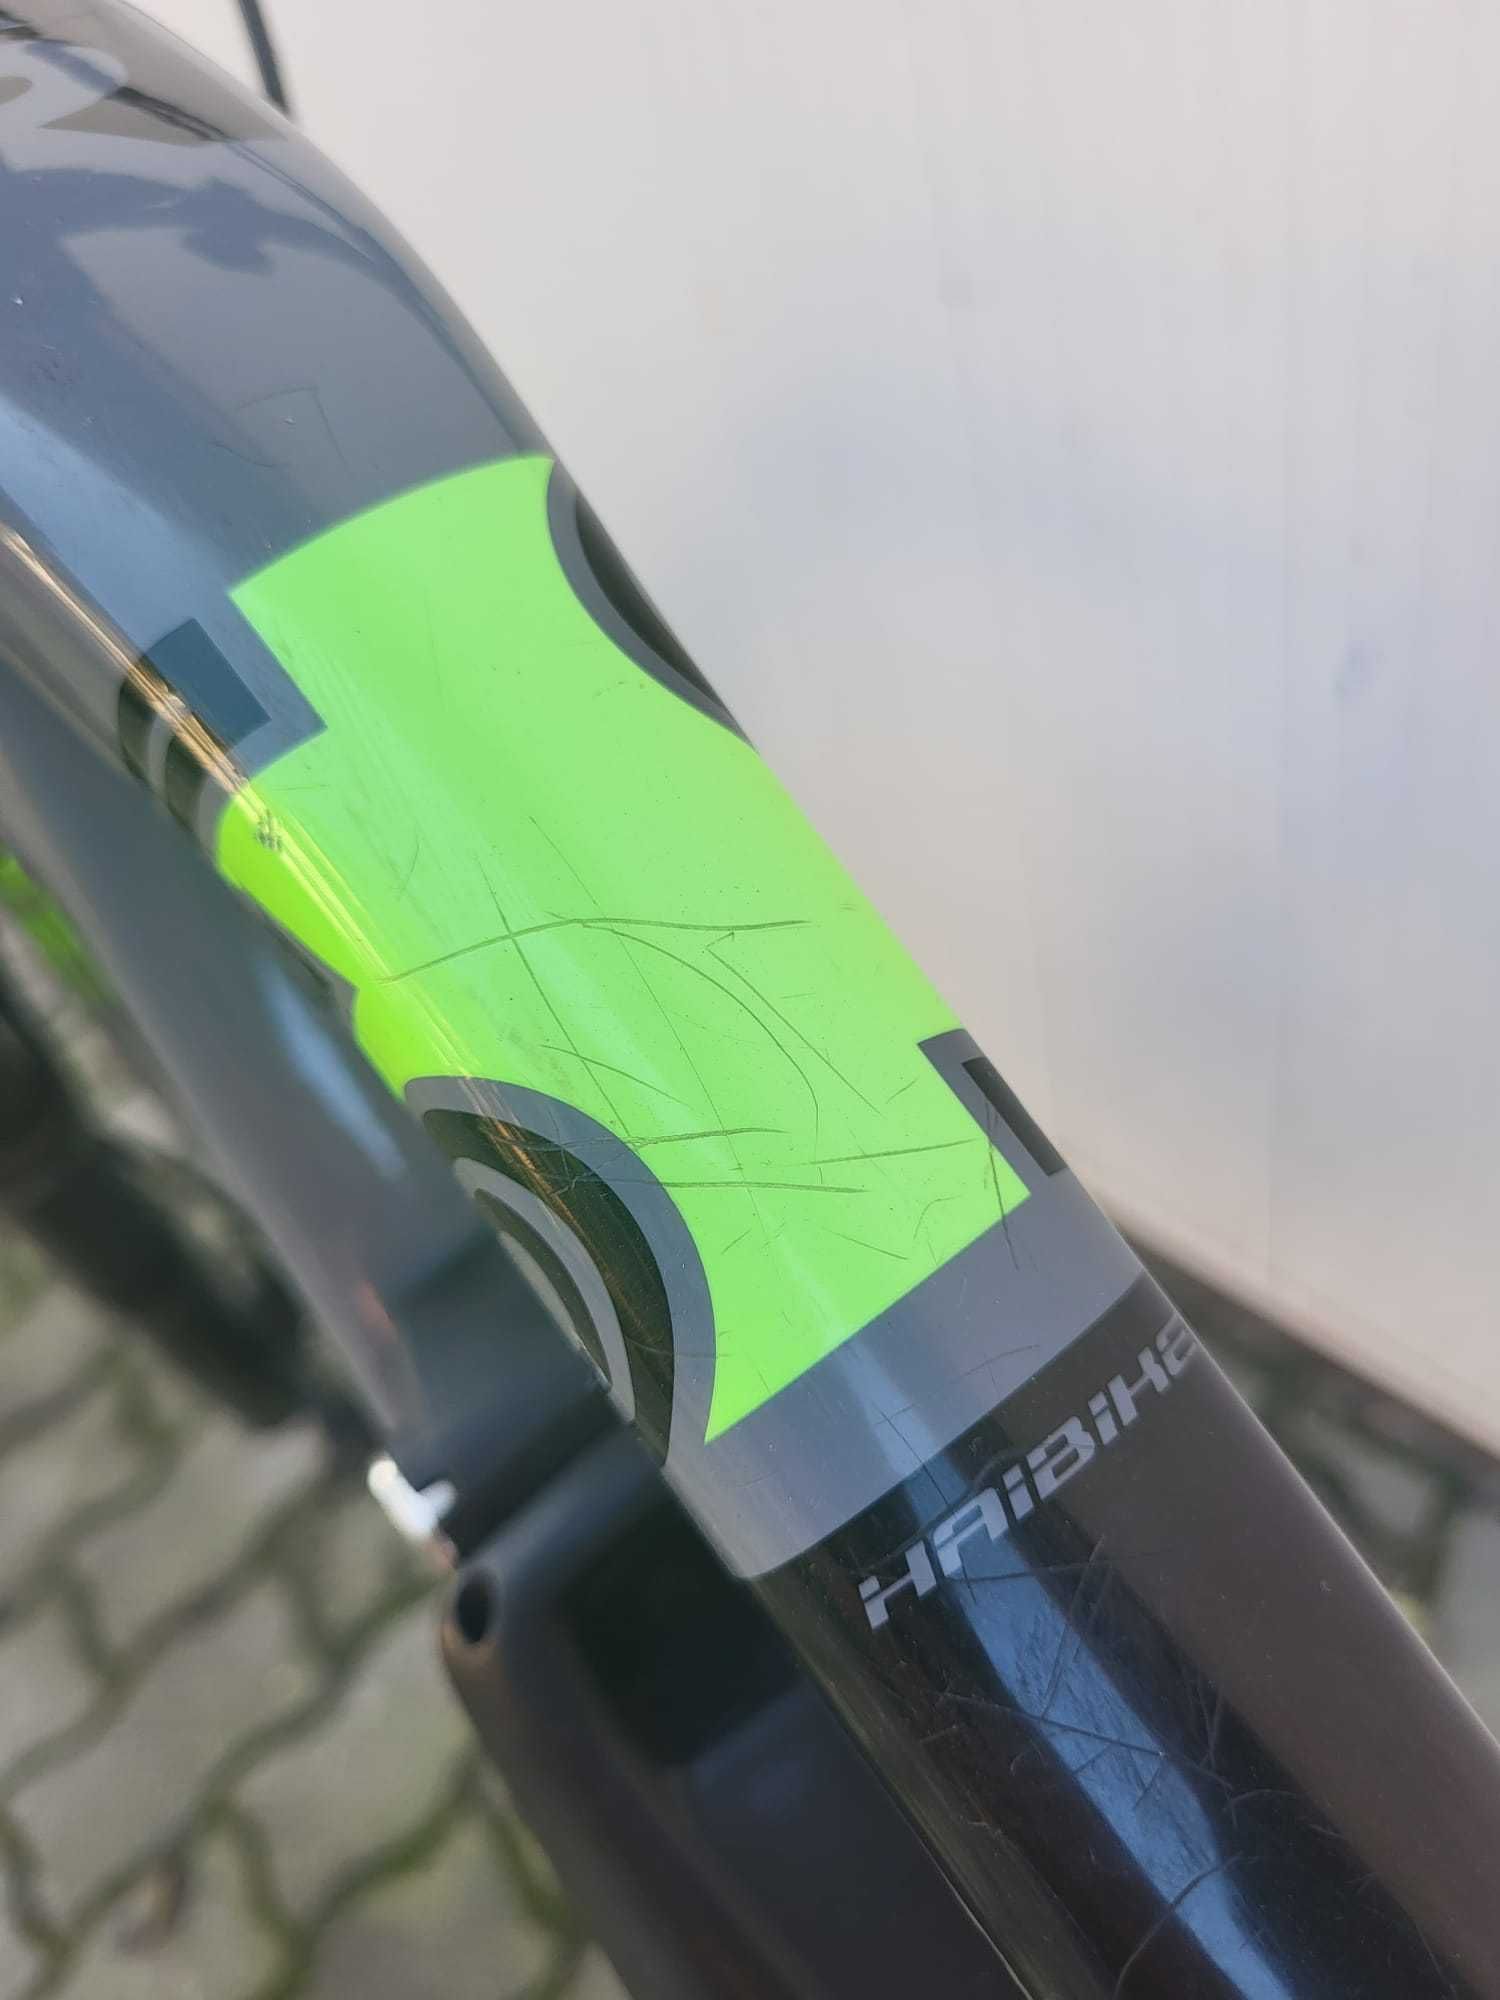 Bicicleta Haibike SDURO fullnine 4.0 2019